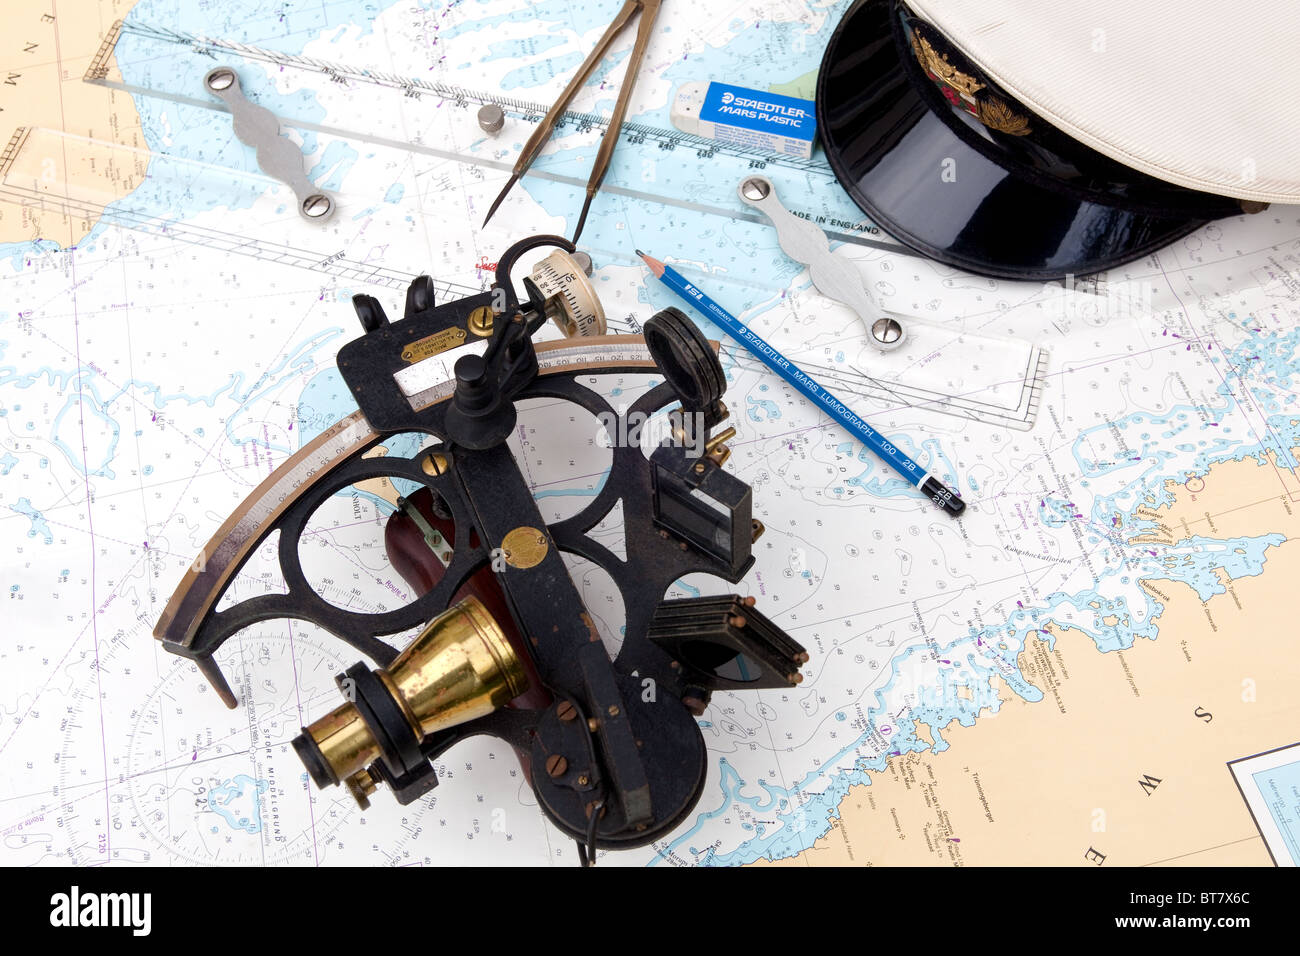 Instruments de navigation maritime. Entrée du Kattegat. Banque D'Images